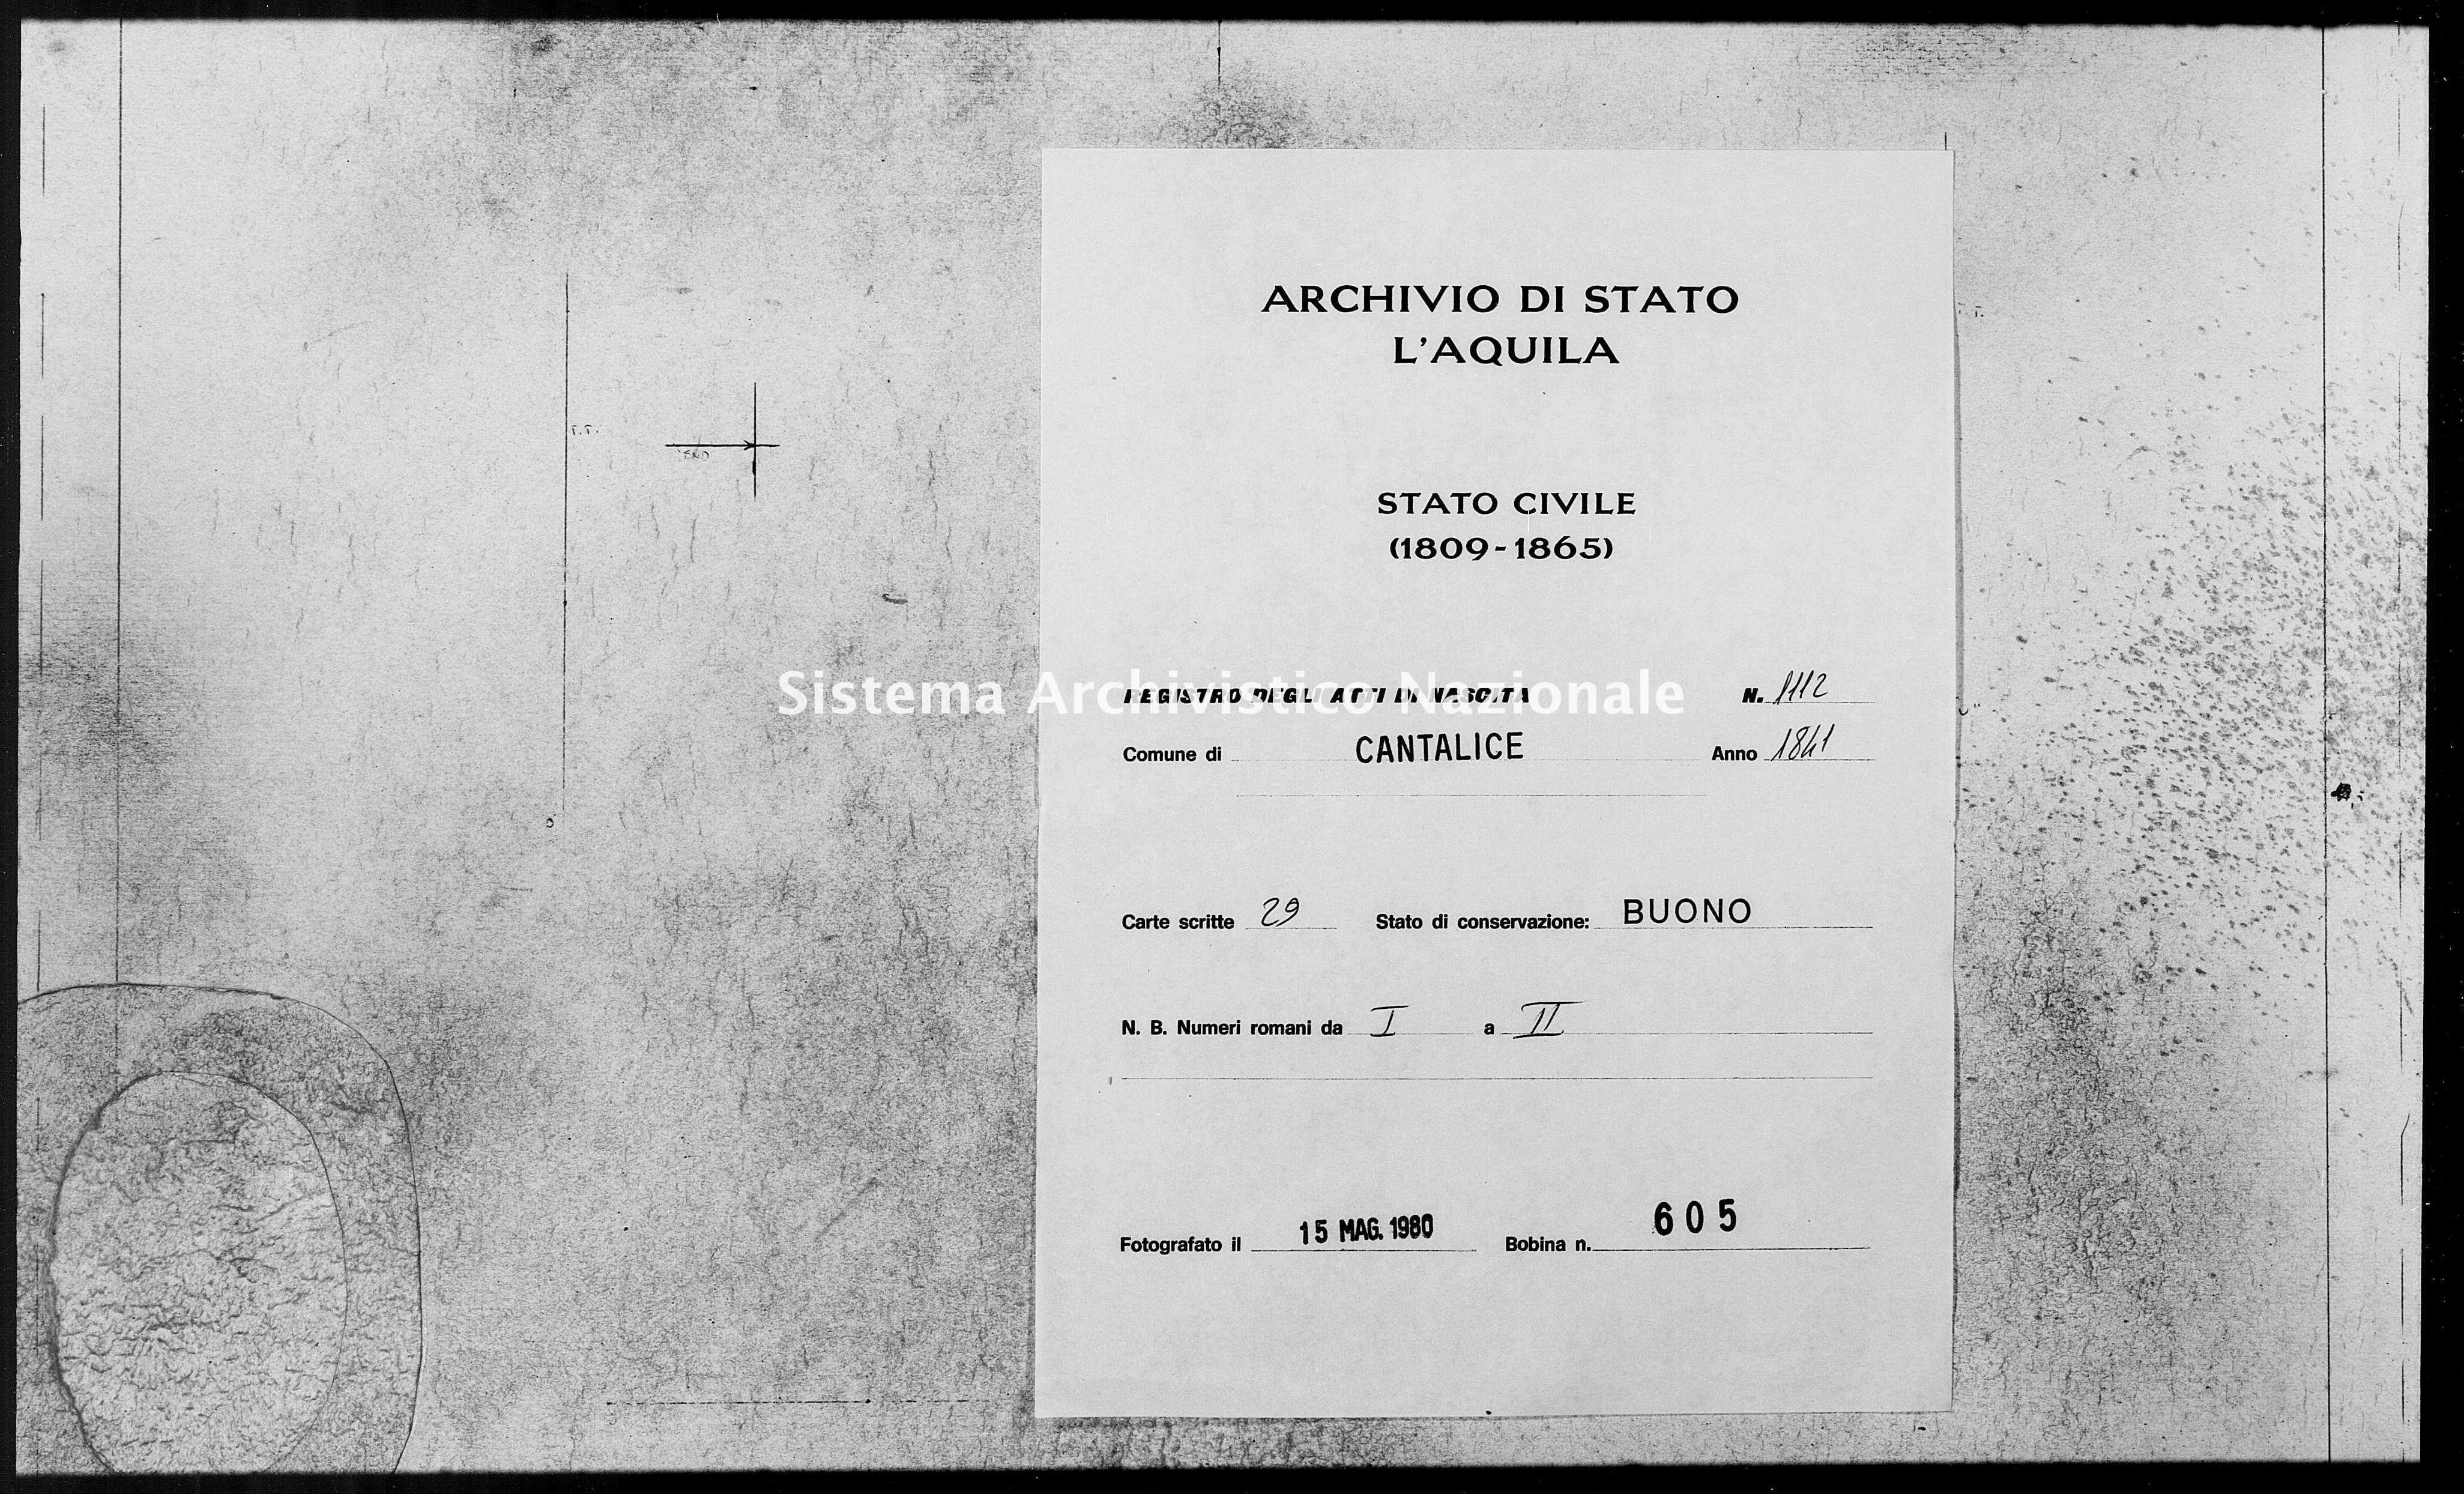 Archivio di stato di L'aquila - Stato civile della restaurazione - Cantalice - Nati - 1841 - 1112 -